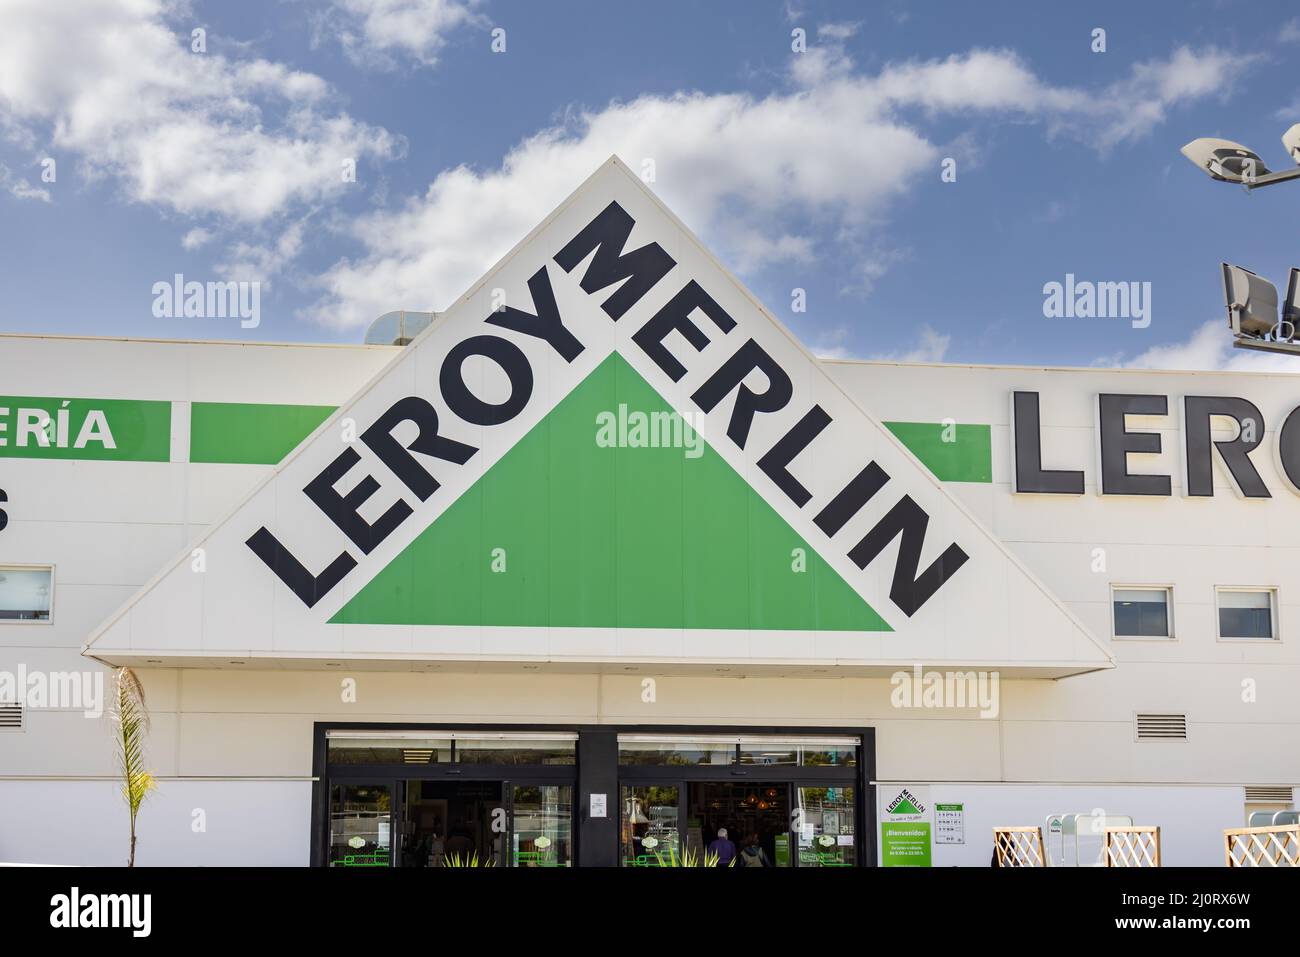 Huelva, España - 19 de marzo de 2022: Tienda Leroy Merlin en Huelva. Leroy Merlin es un minorista francés de la mejora casera y de la jardinería Foto de stock